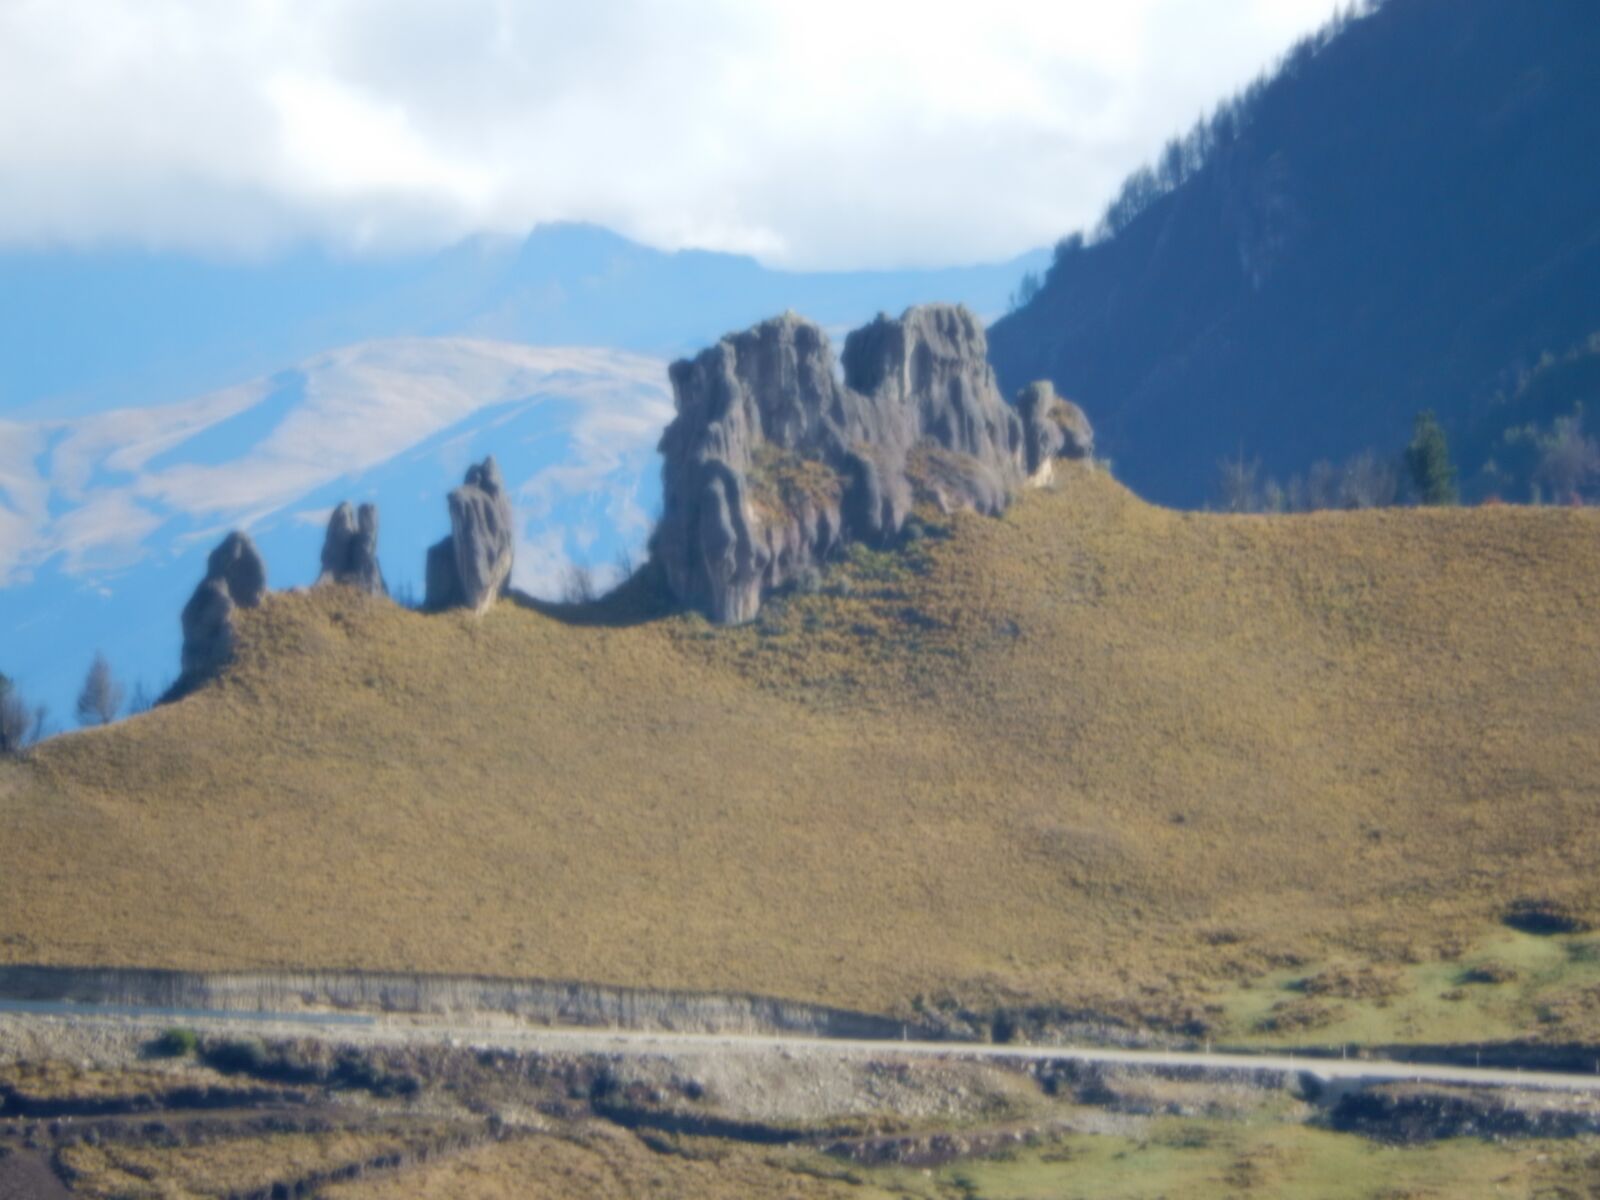 Nikon COOLPIX S9600 sample photo. Mountains, ecuador, landscape photography